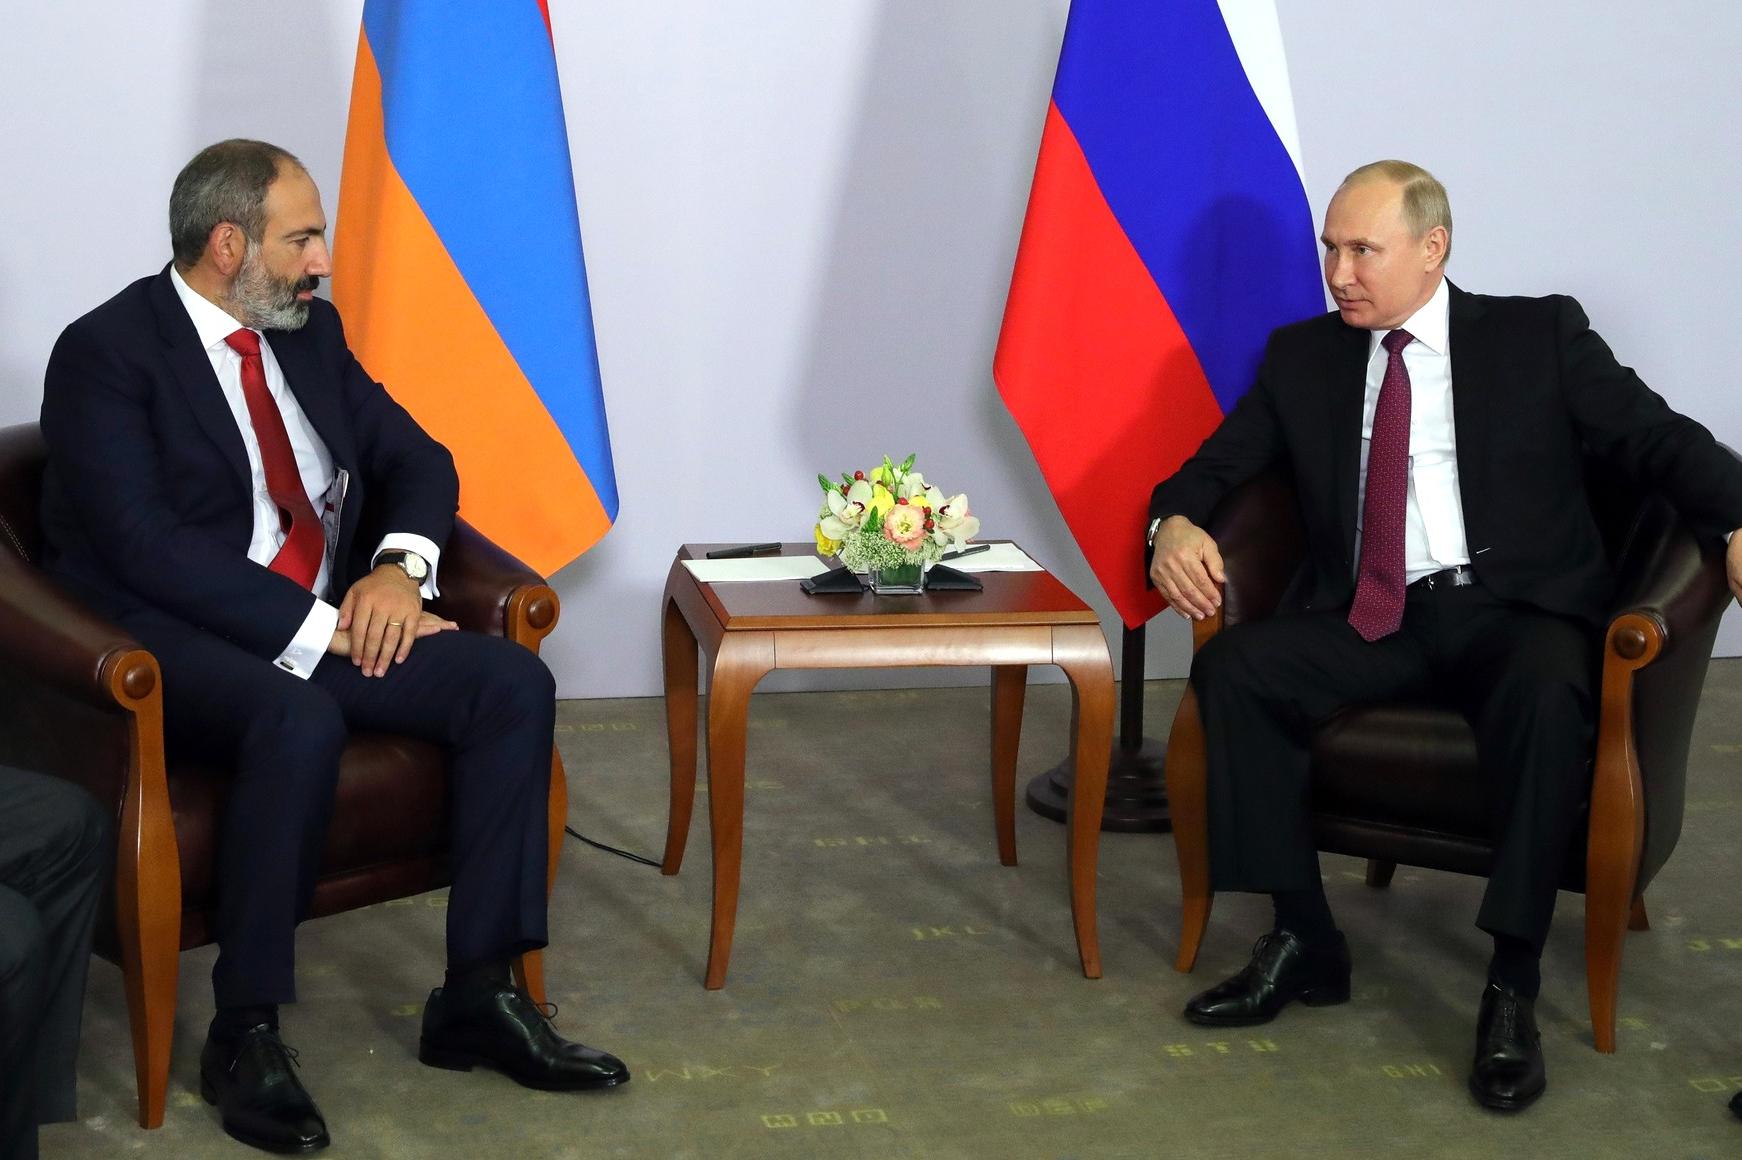 Никол Пашинян и Владимир Путин обсудили цену на газ в Санкт-Петербурге – министр